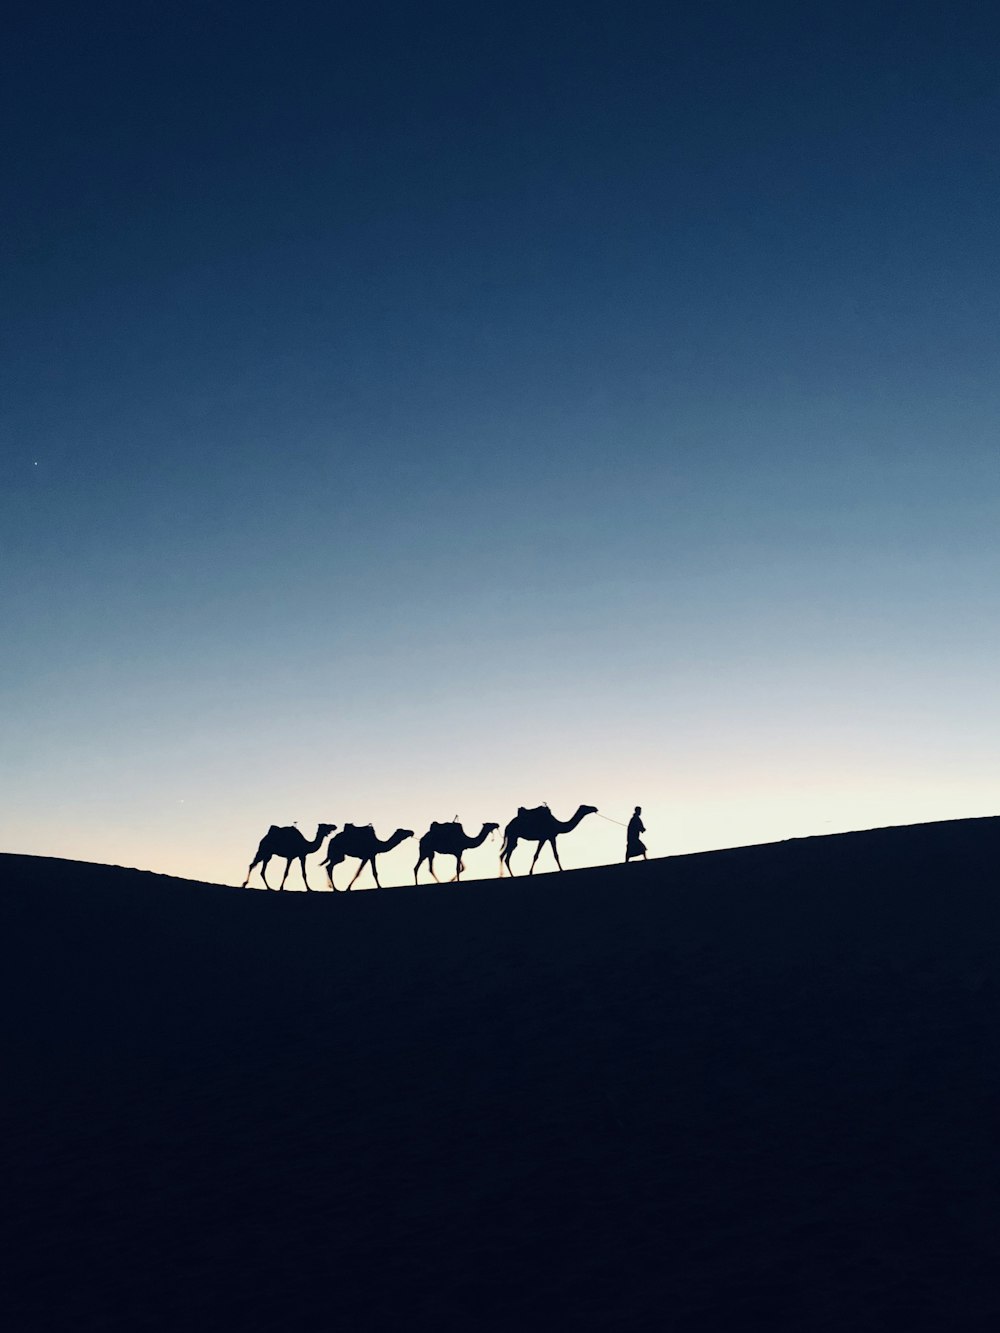 Fotografia de silhueta de quatro camelos